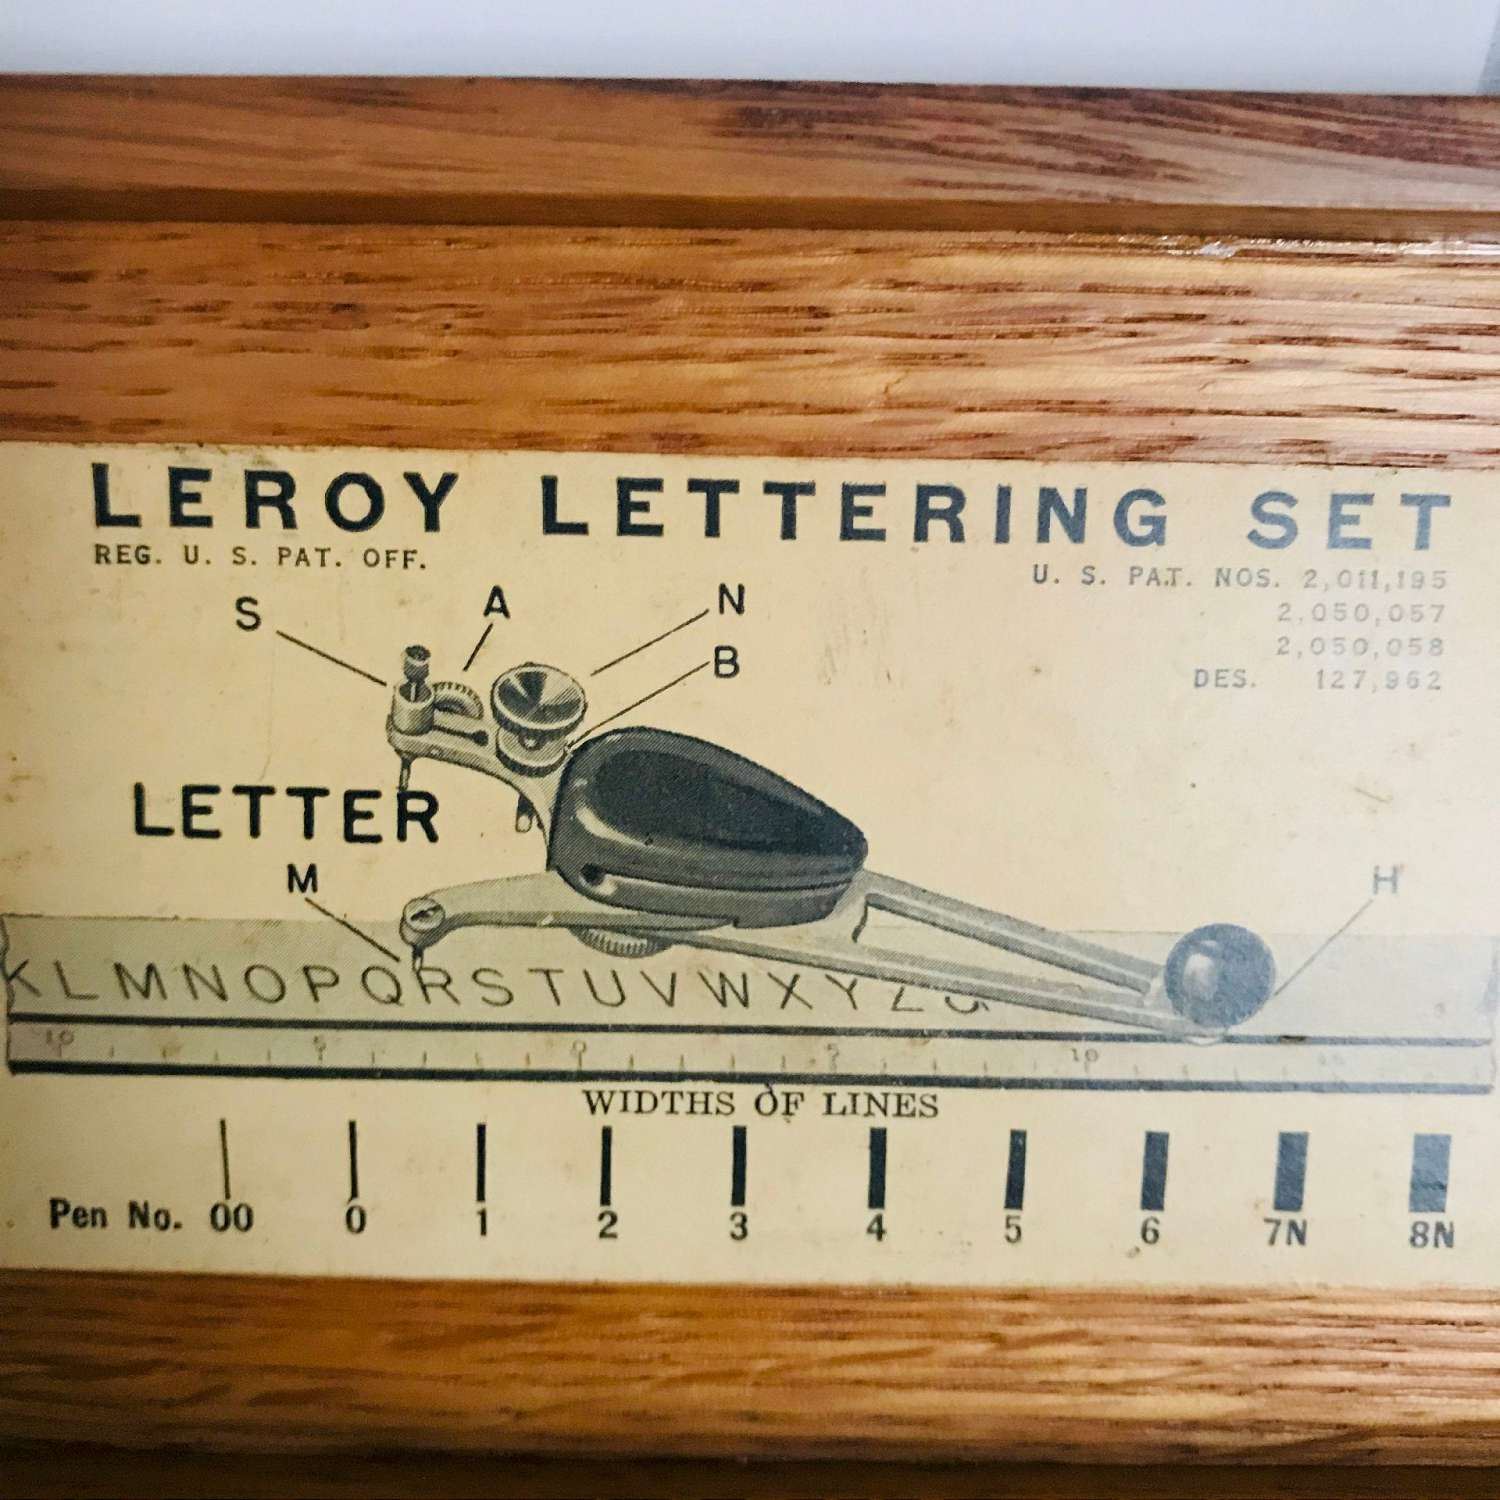 This vintage Leroy lettering set, leroy lettering set